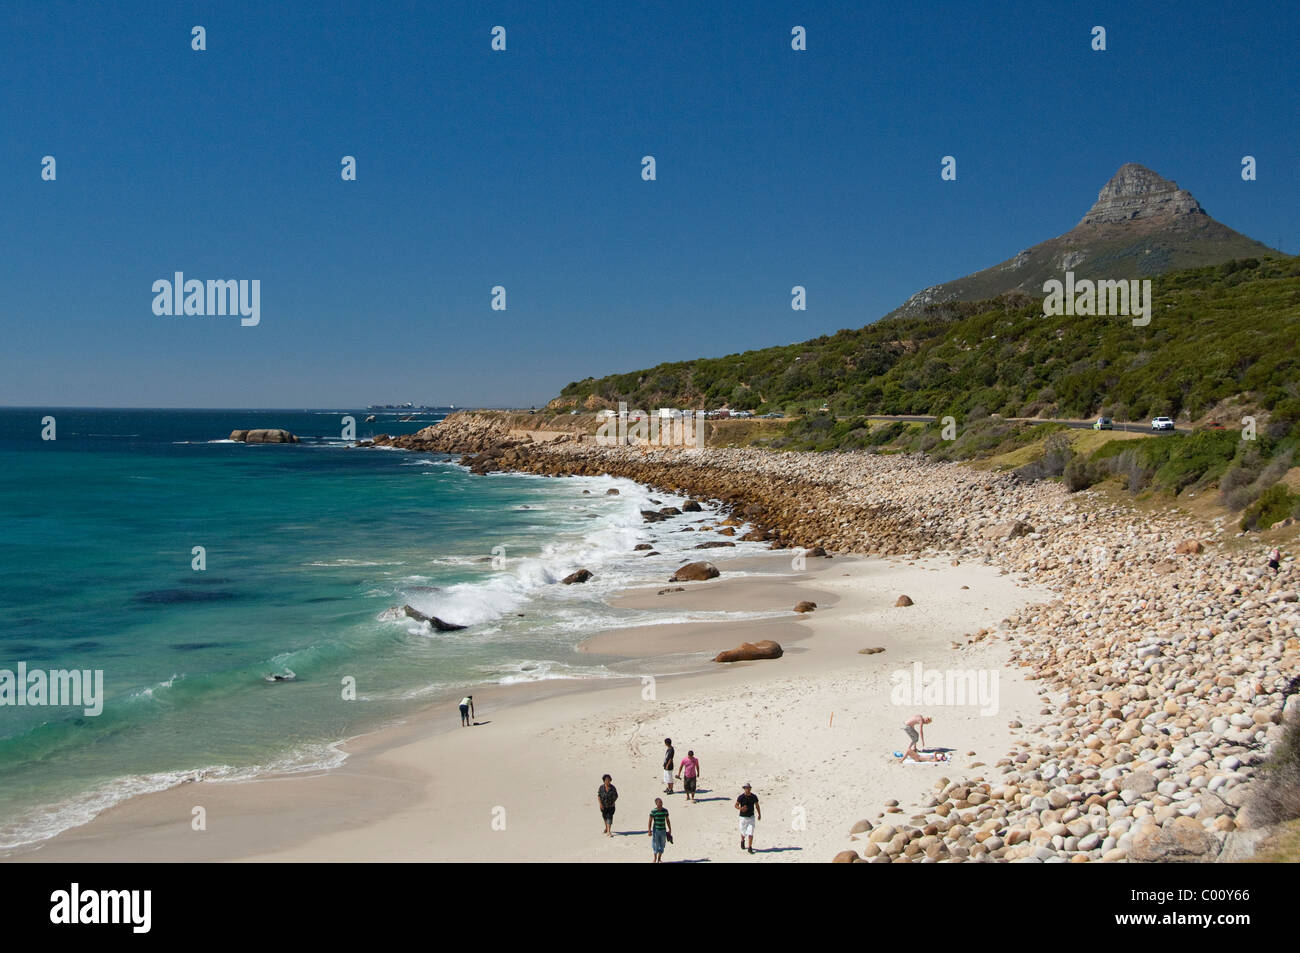 Sud Africa, Cape Town, di Camps Bay e Clifton area, vista del retro della testa di leone landmark formazione di roccia, Bukhoven Beach. Foto Stock